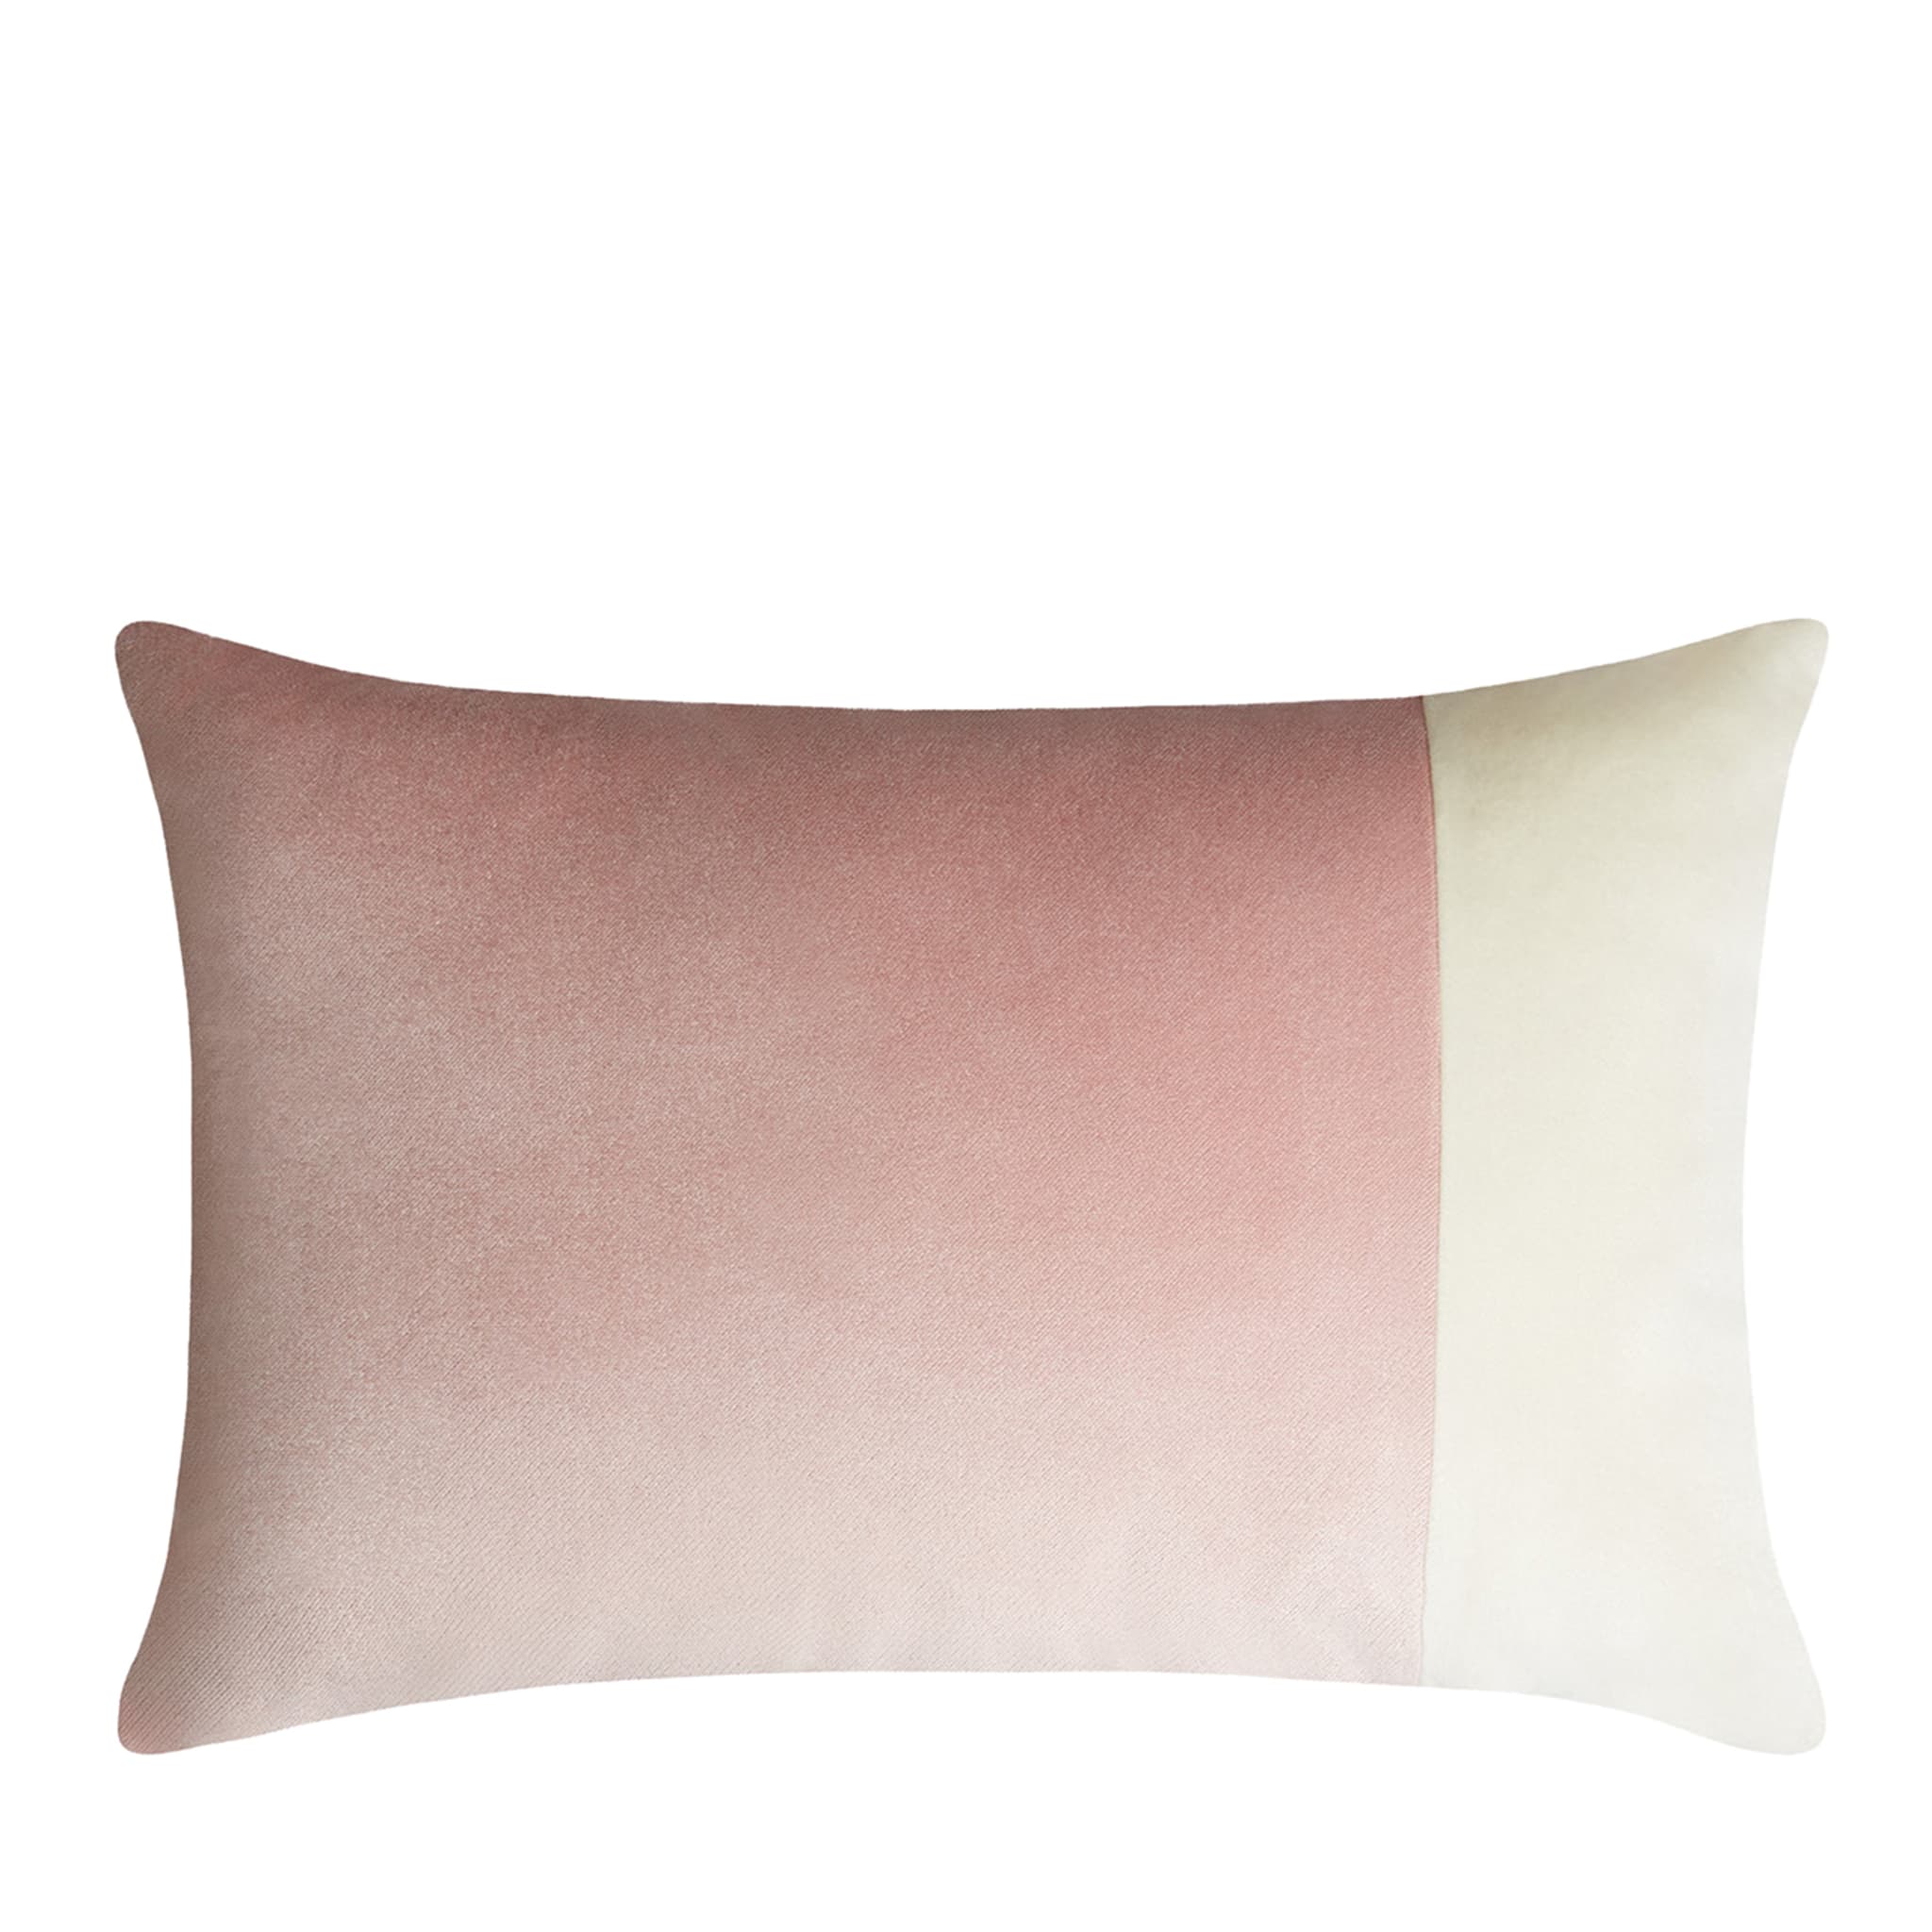 Double coussin rectangulaire rose et blanc - Vue principale